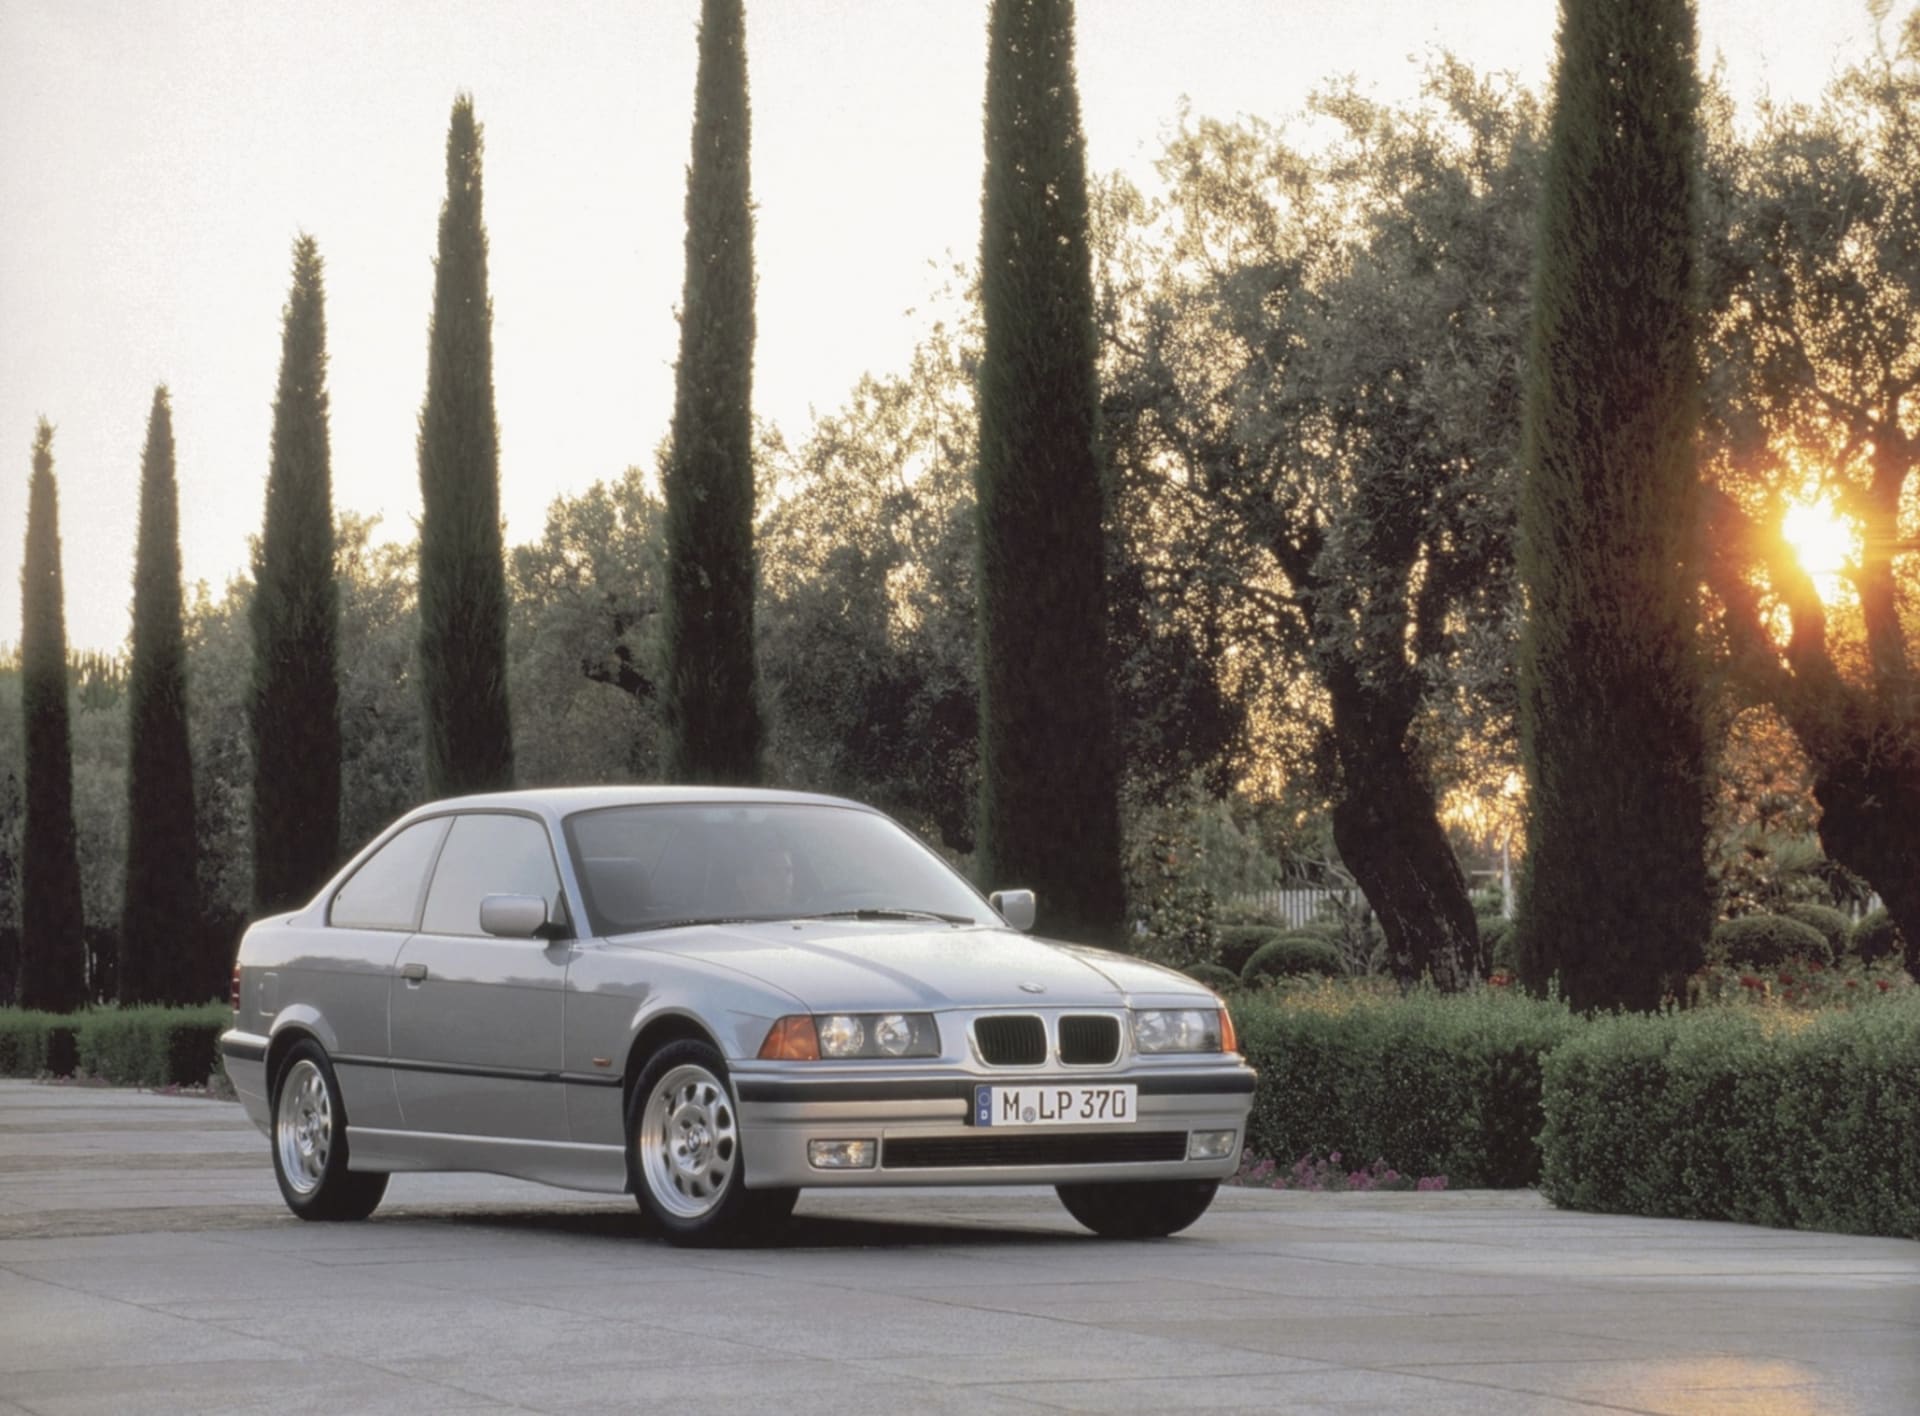 BMW řady 3 (E46) je dnes už kultovním modelem. Sehnat pěkné kupé je investičním ternem.